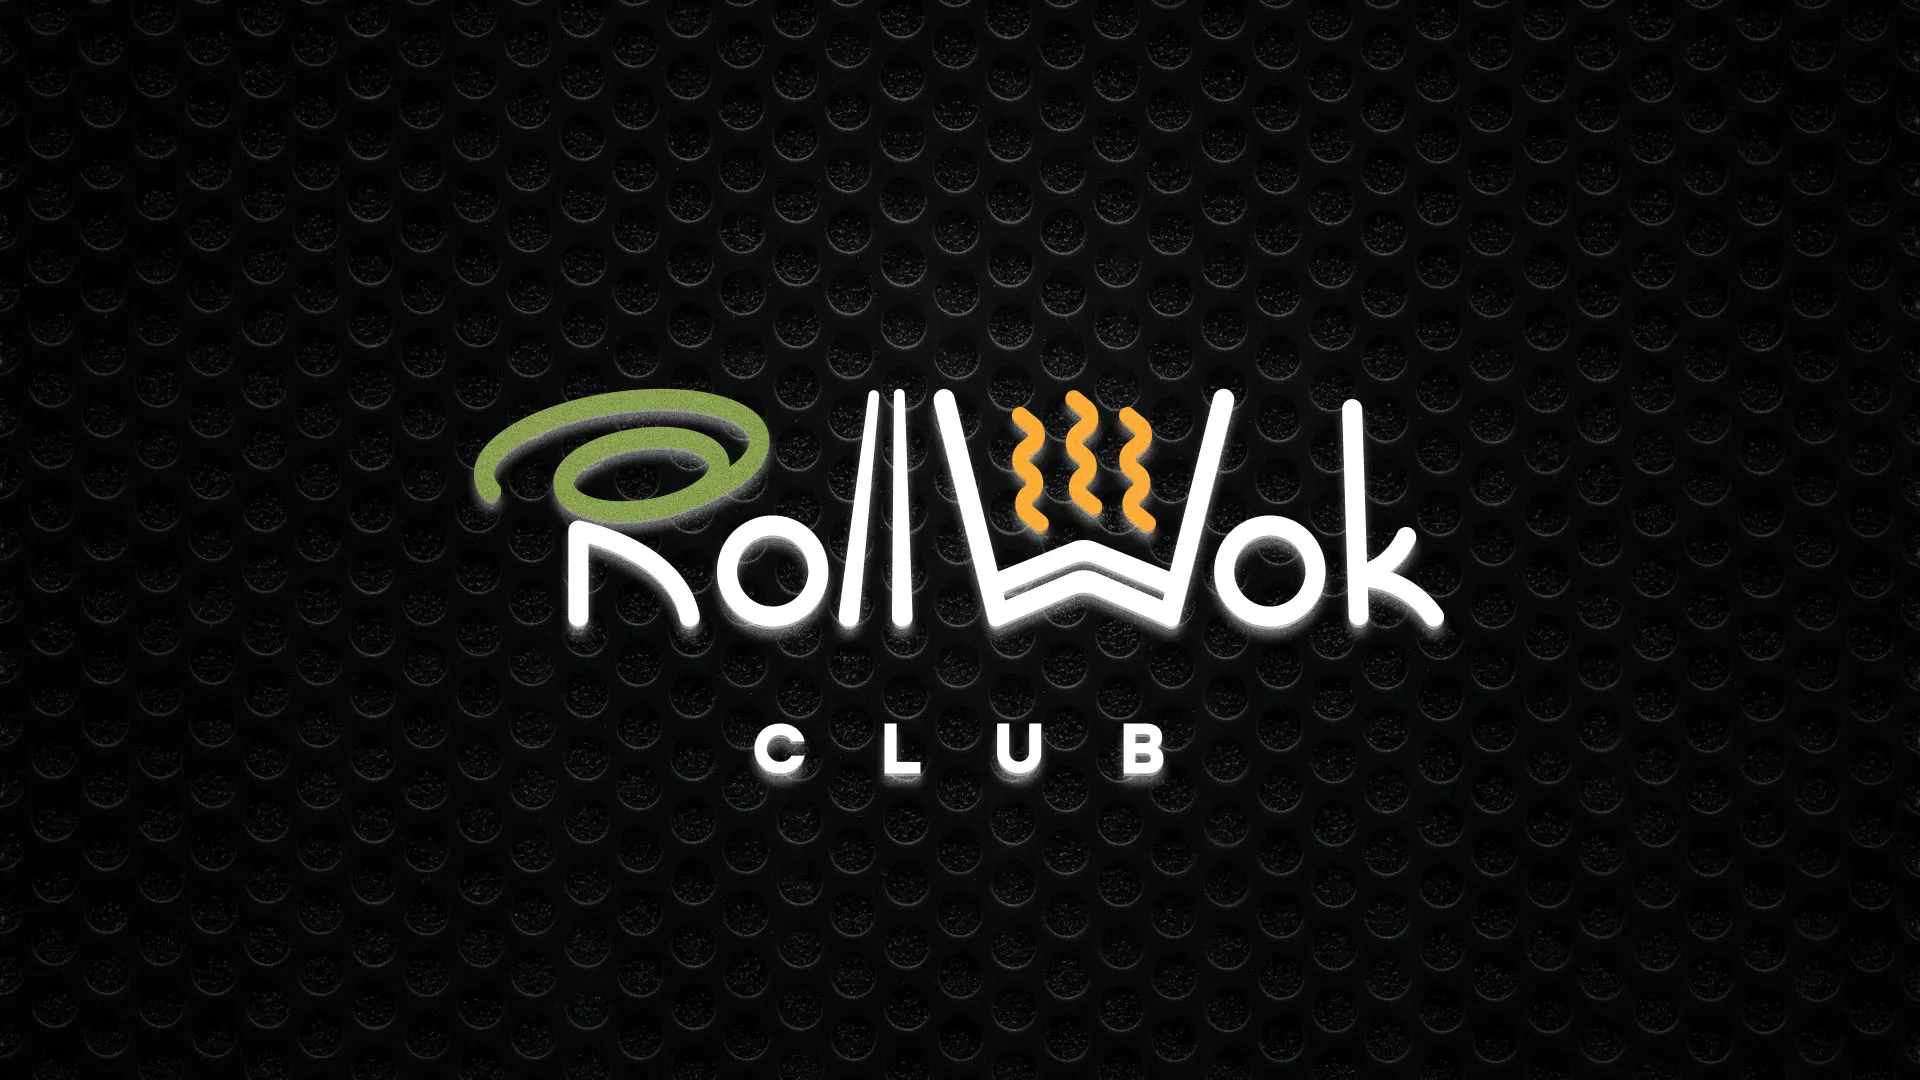 Брендирование торговых точек суши-бара «Roll Wok Club» в Пушкино